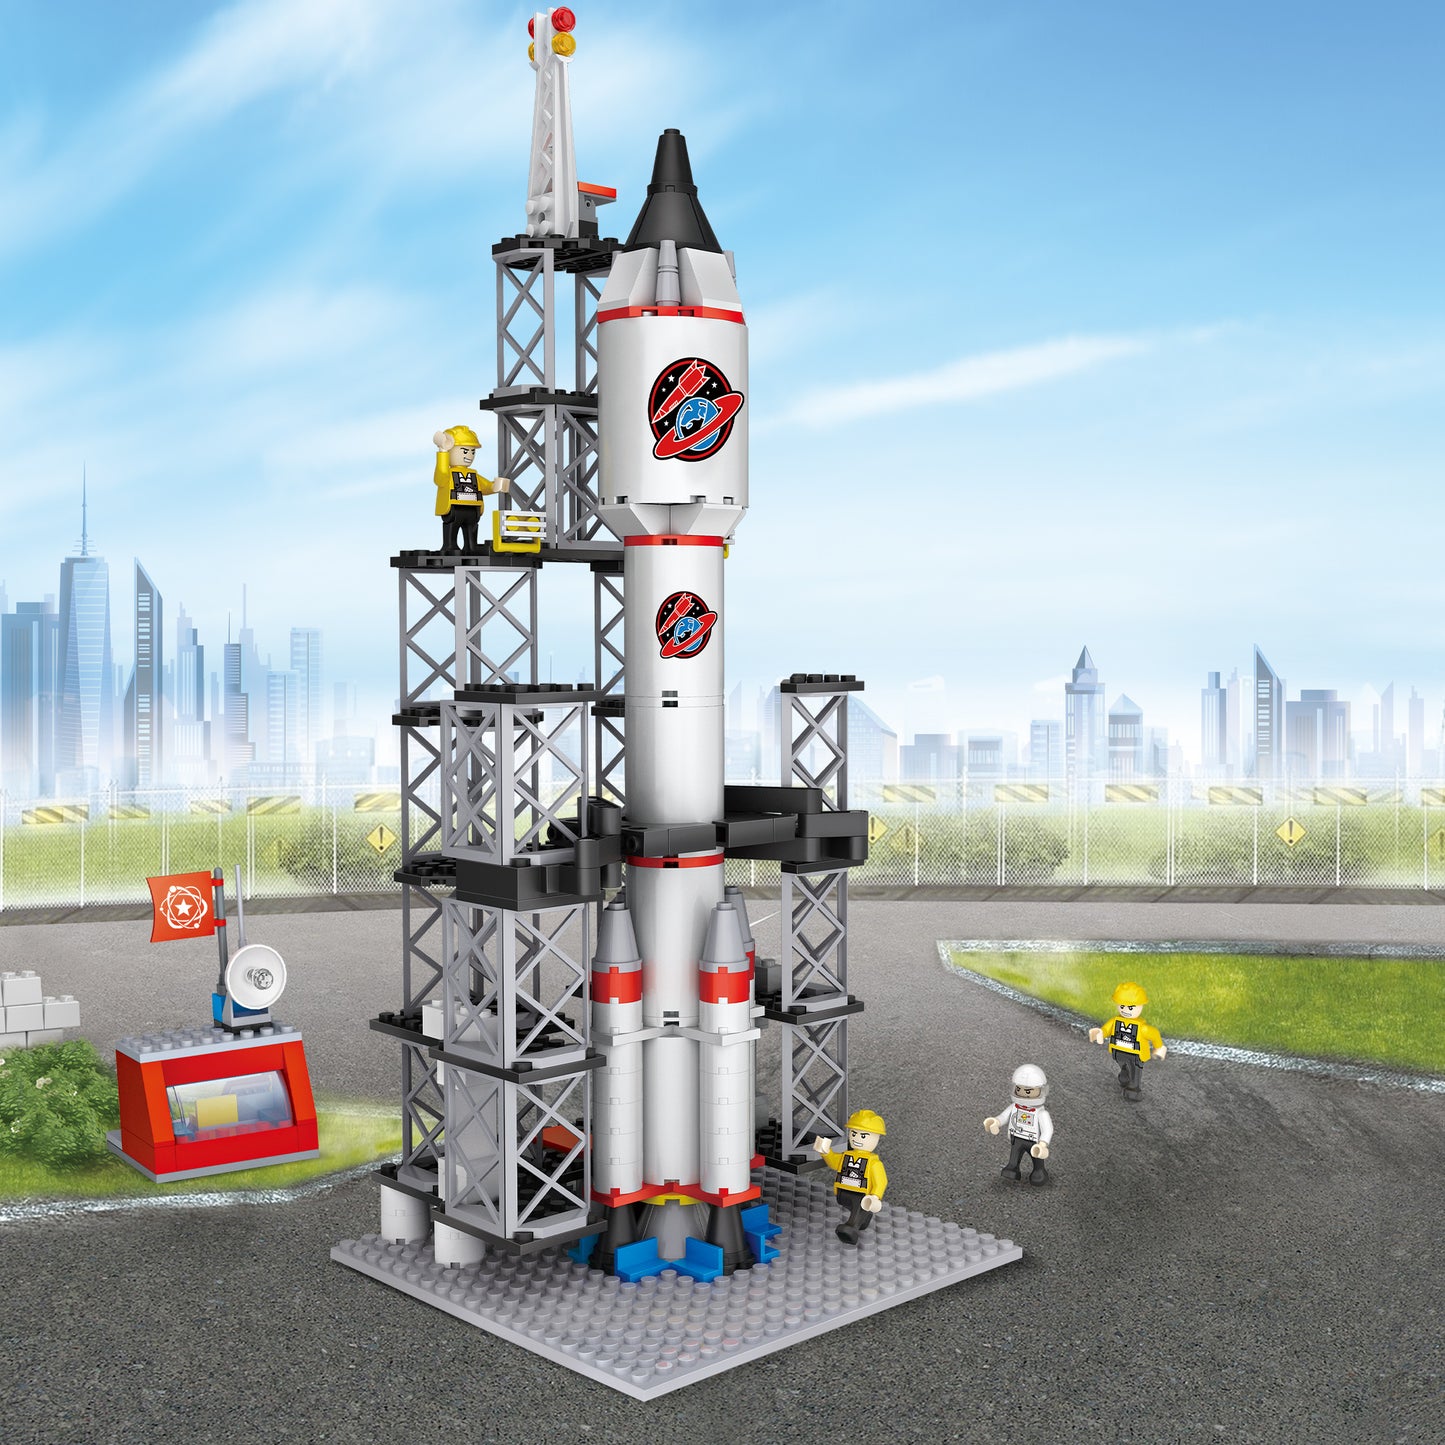 新城市系列小颗粒积木-航天火箭/309pcs,改版MOQ:3000pcs